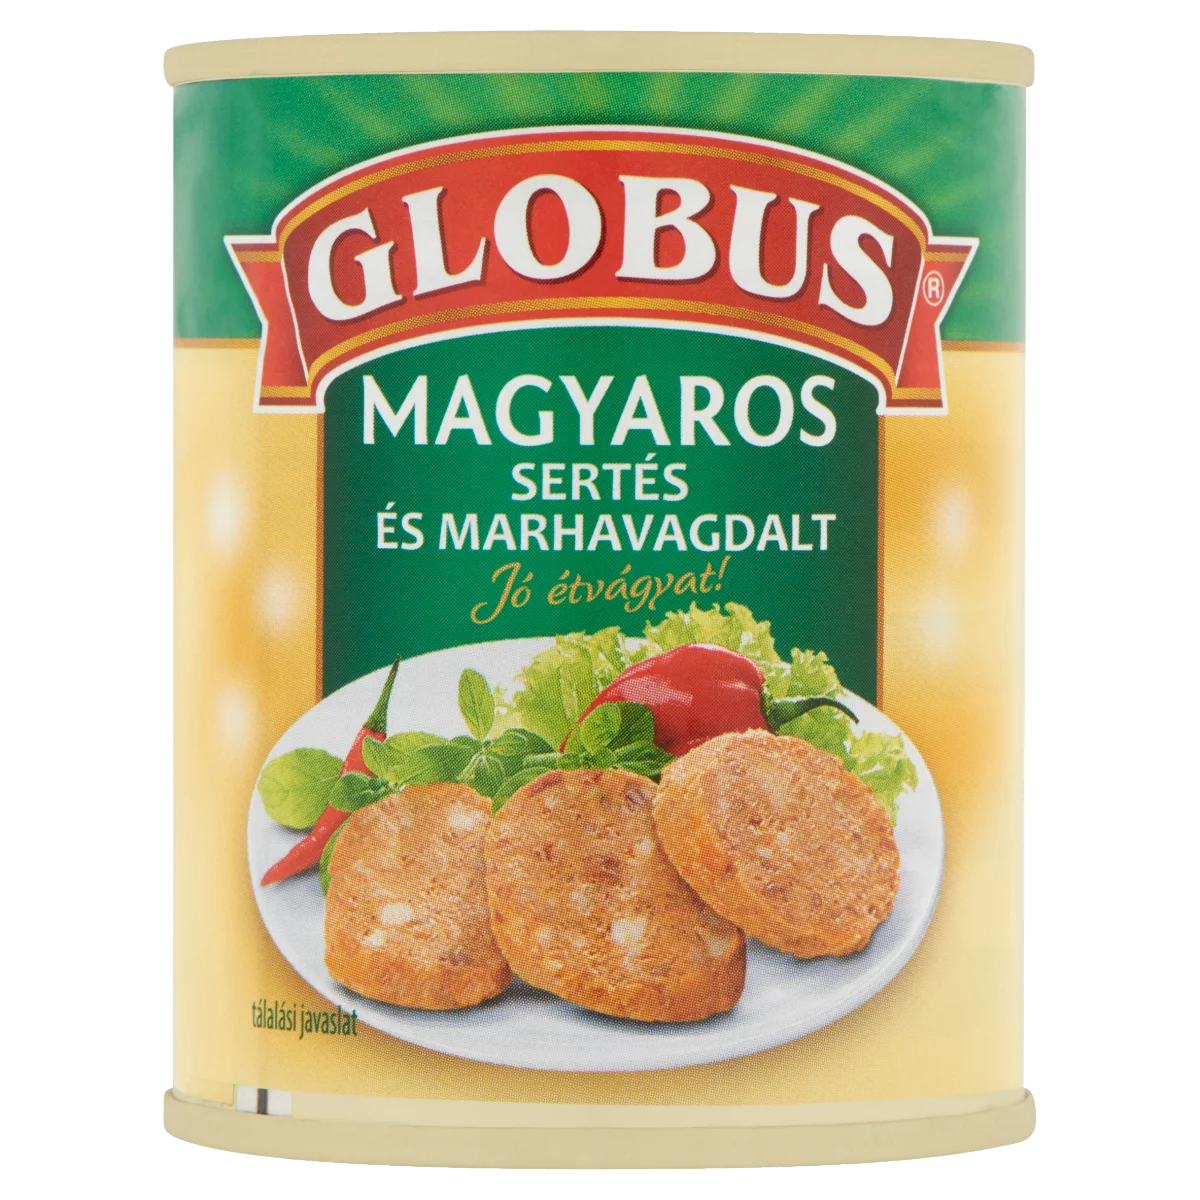 Globus magyaros sertés és marhavagdalt 130 g